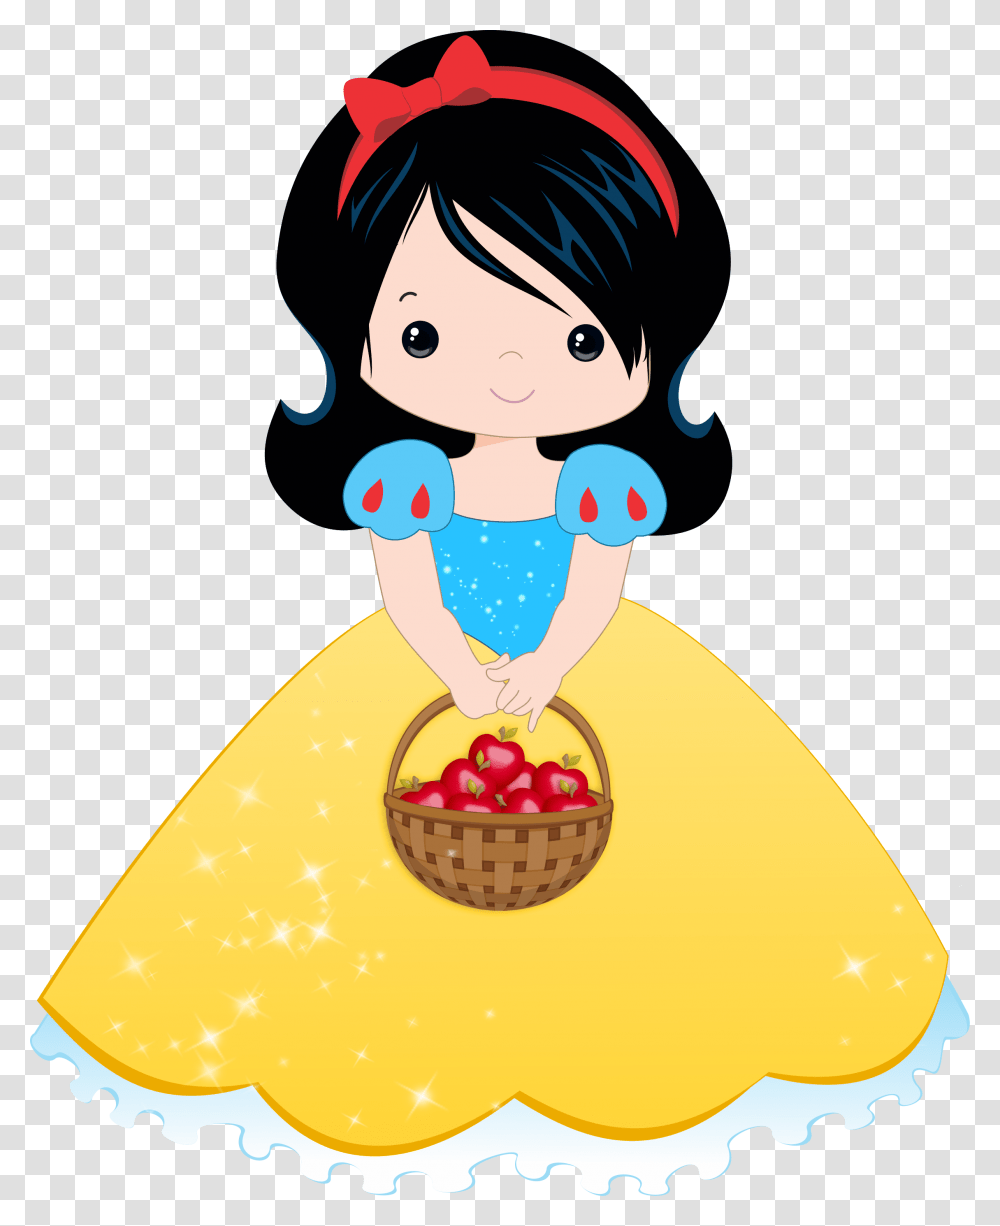 Snow White At Getdrawings Branca De Neve Desenho, Cake, Dessert, Food, Meal Transparent Png